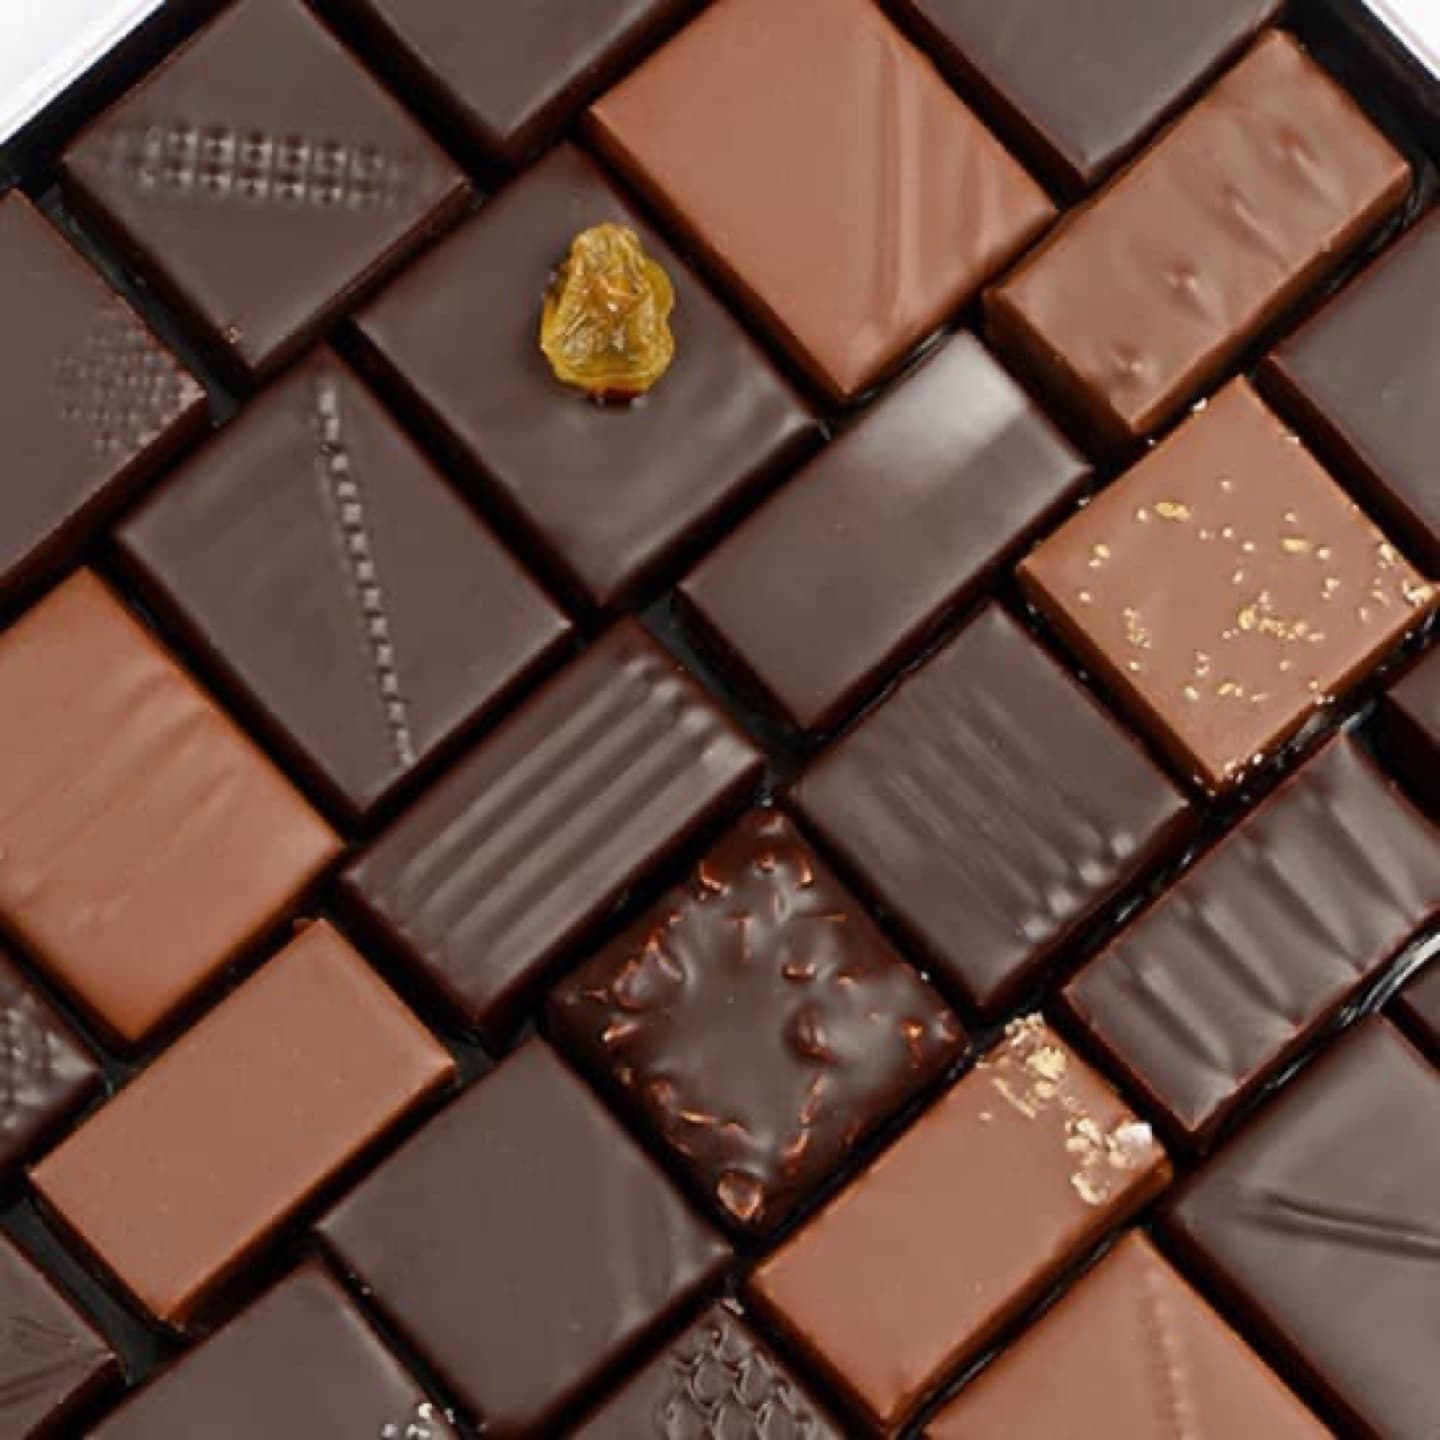 Assortiment Chocolats Noir et Lait 640g - 68 pièces